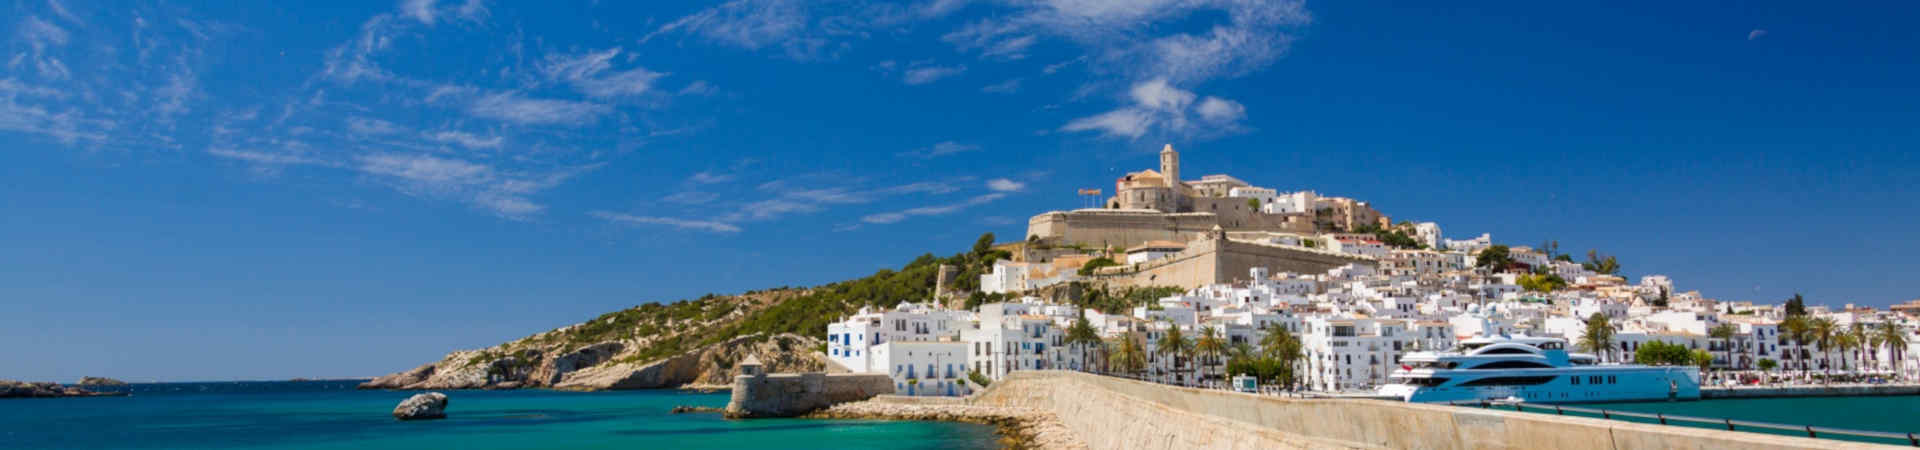 Imagen recurso del puerto de destino Ibiza para la ruta en ferry Barcelona - Ibiza